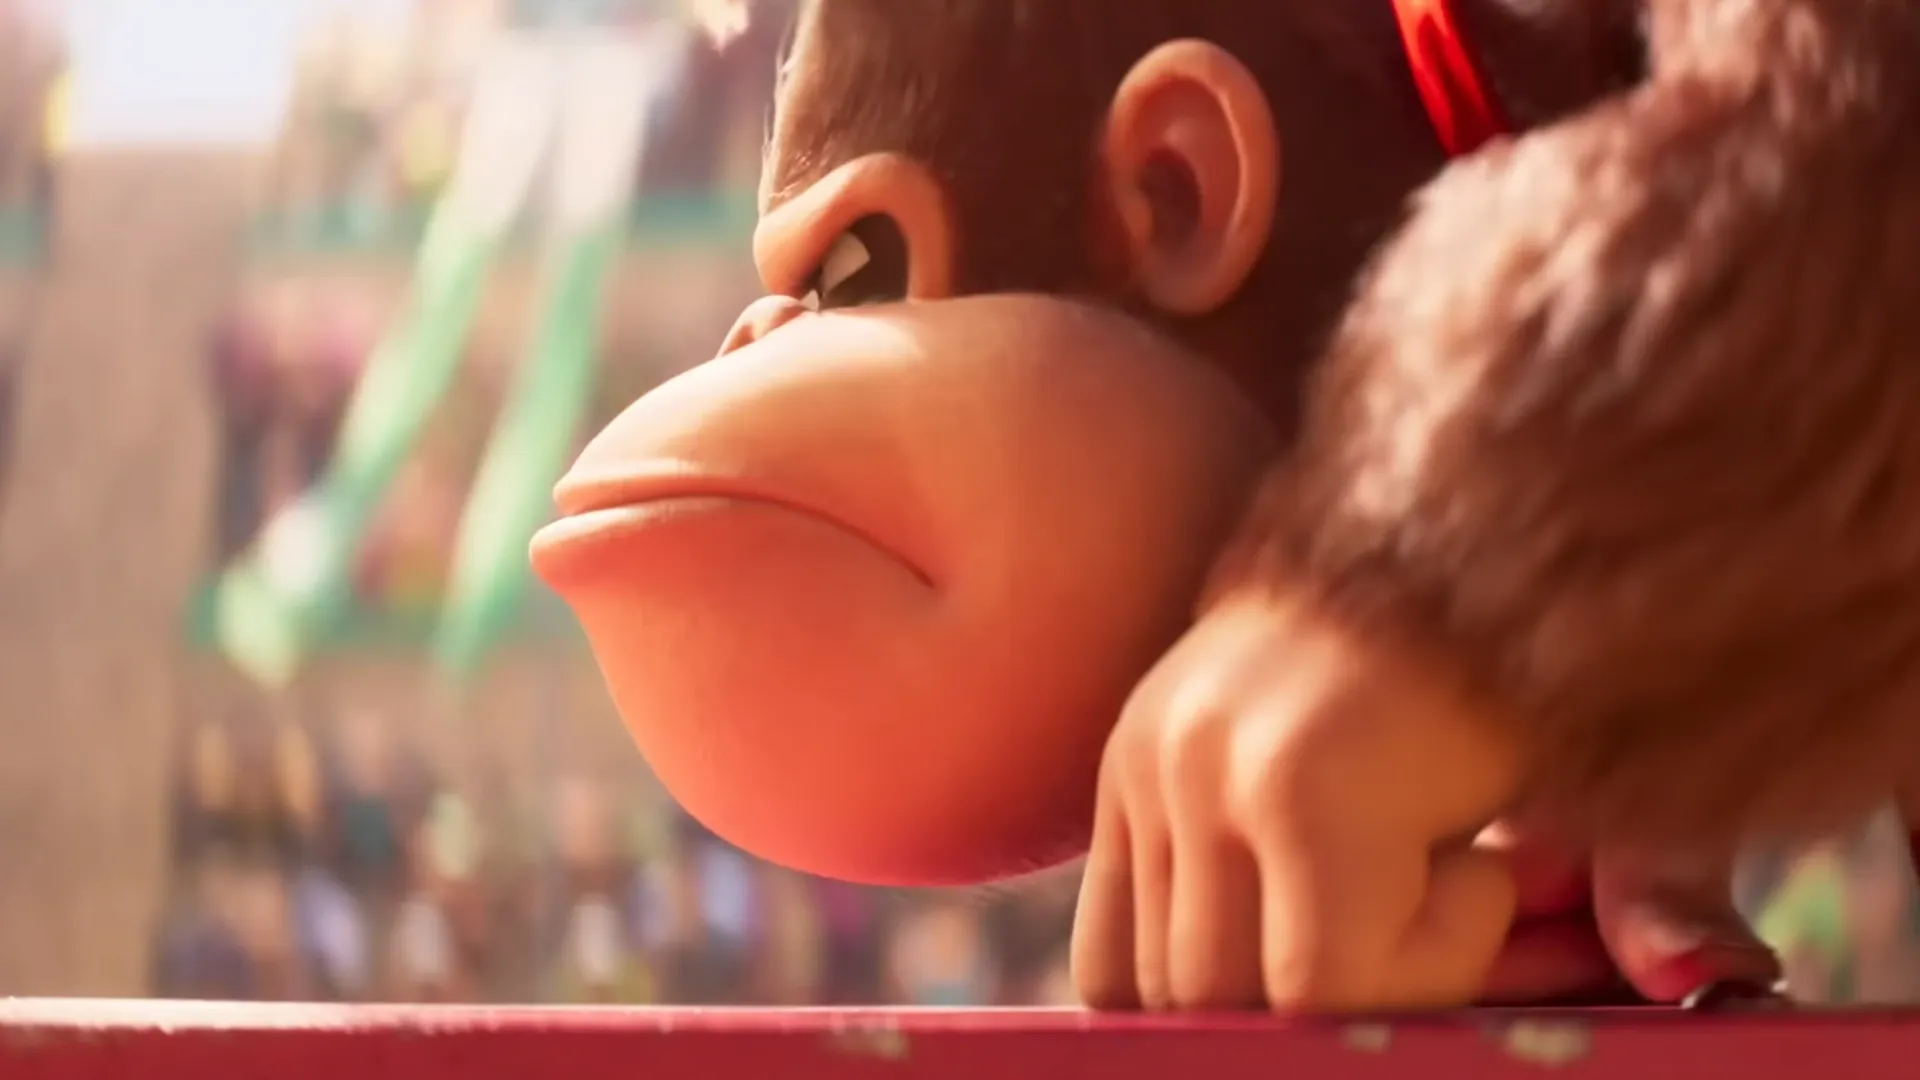 Donkey Kong Country: Tropical Freeze recebe trailer com modo Funky em ação